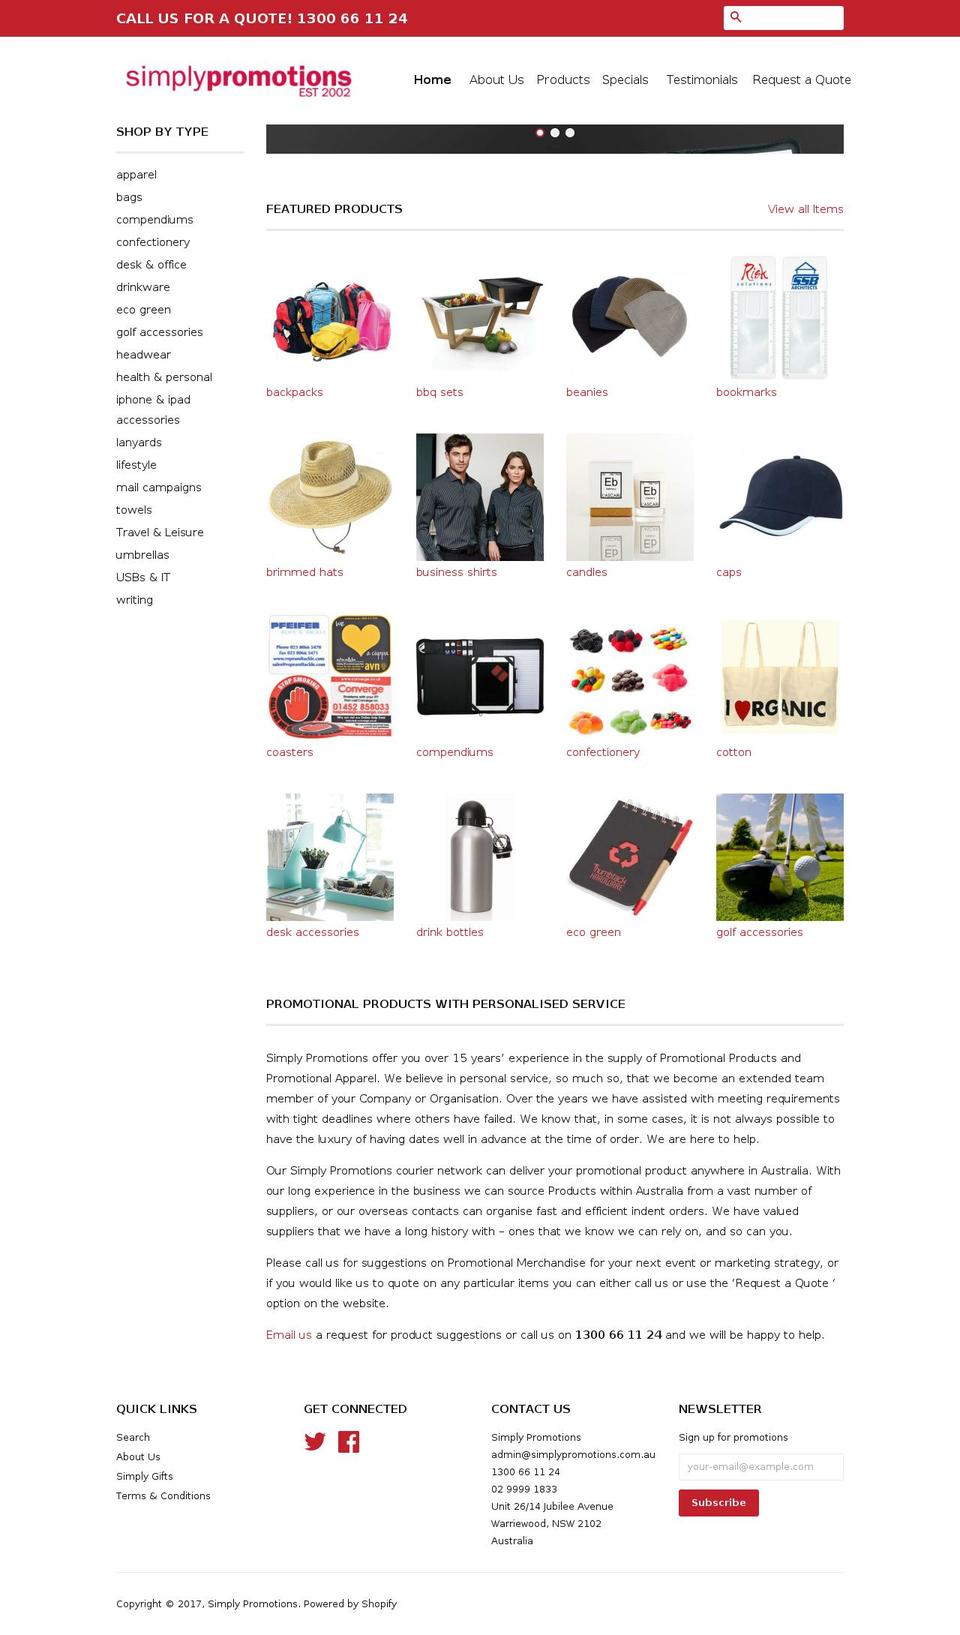 simplypromotions.com.au shopify website screenshot